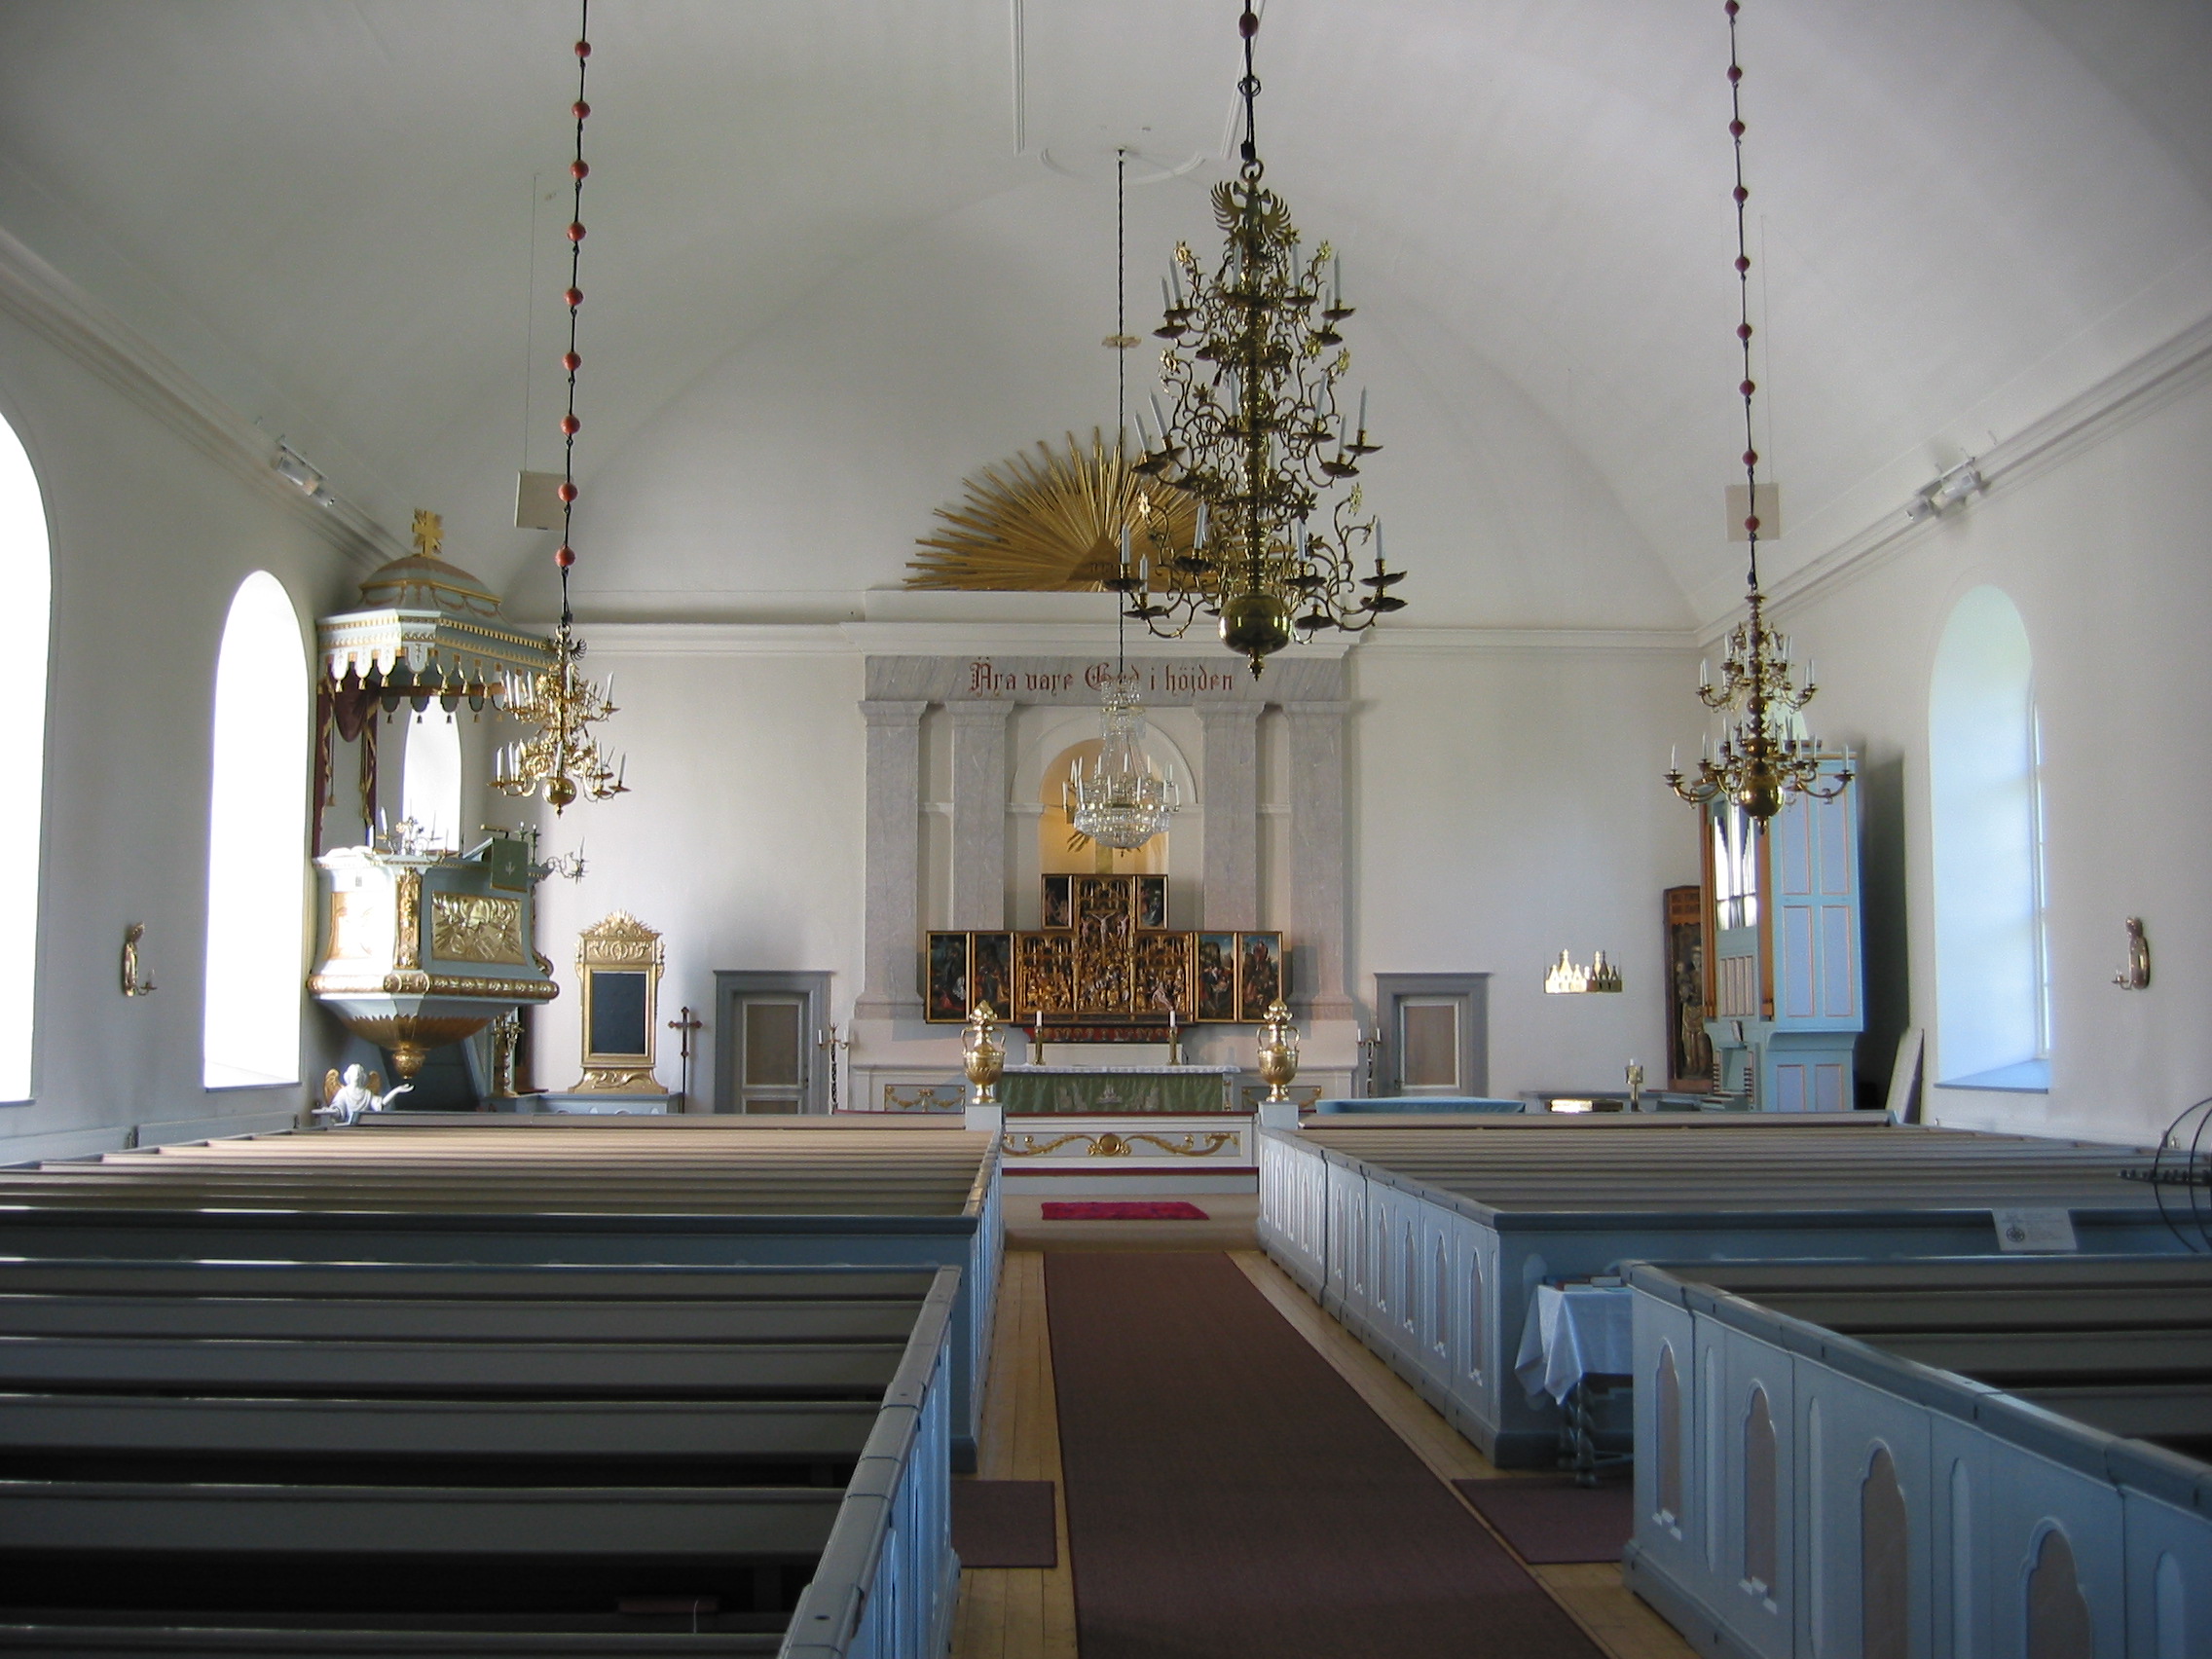 Nordingrå kyrka, interiör, kyrkorummet, vy mot koret.